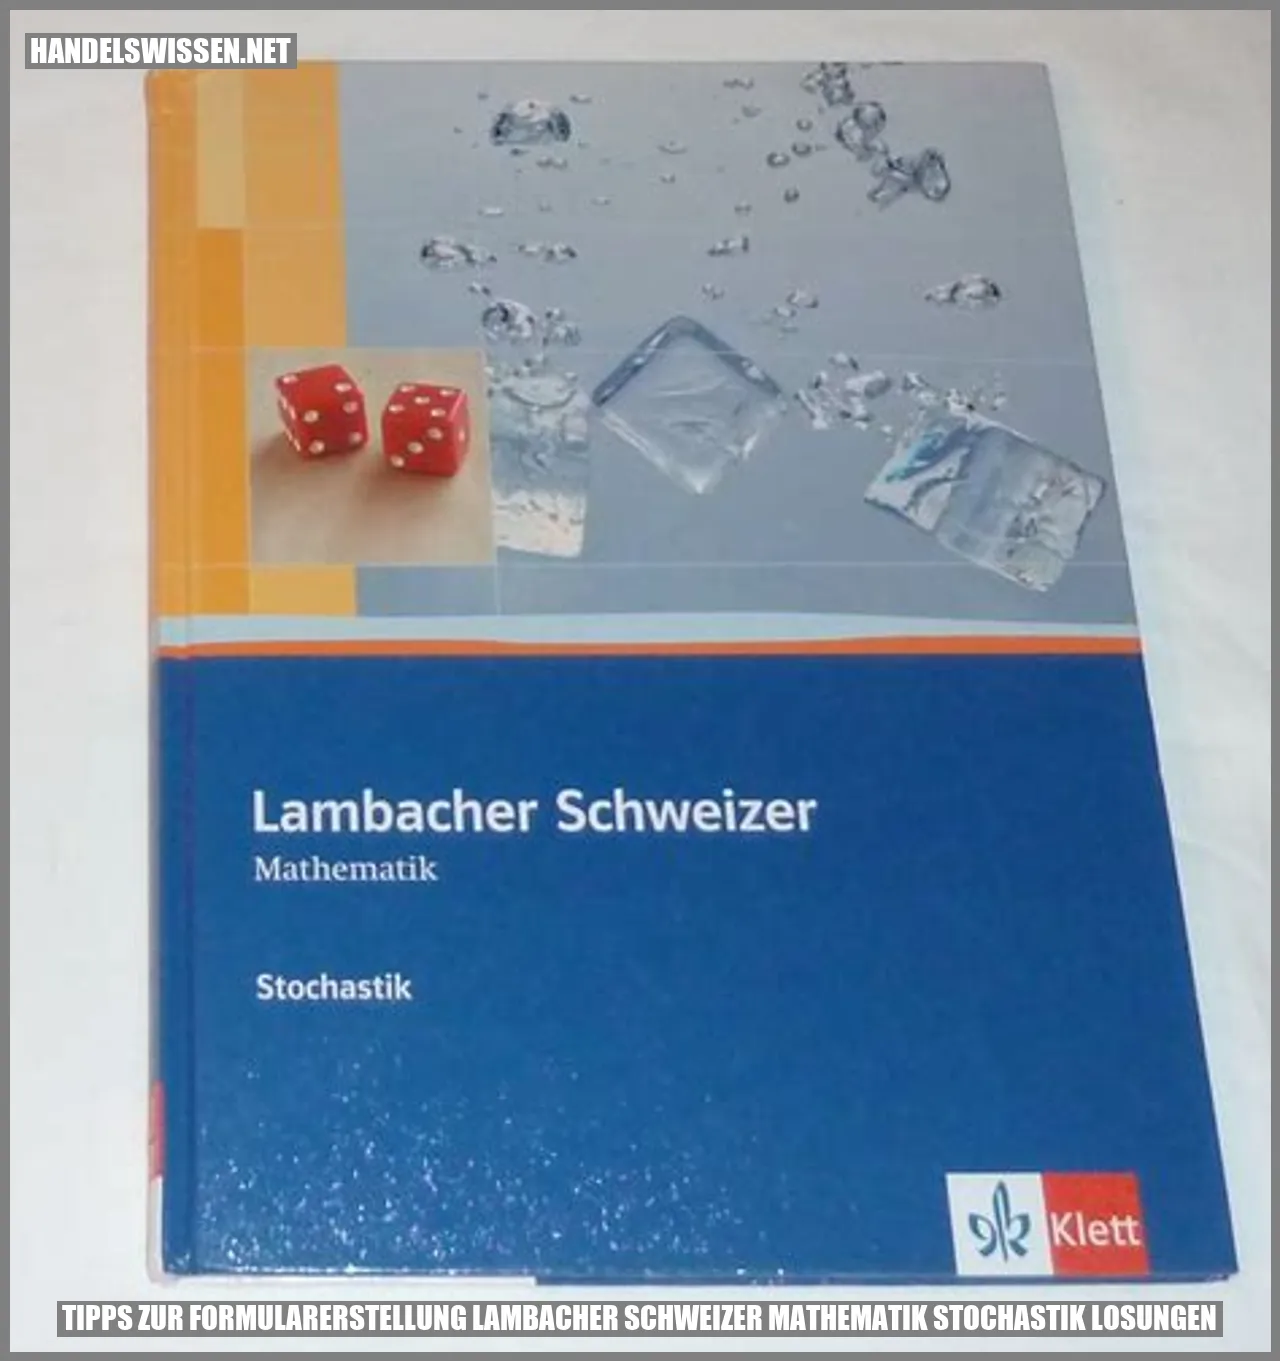 Tipps zur Erstellung von Formularen in der Stochastik mit Lambacher Schweizer Mathematik Lösungen